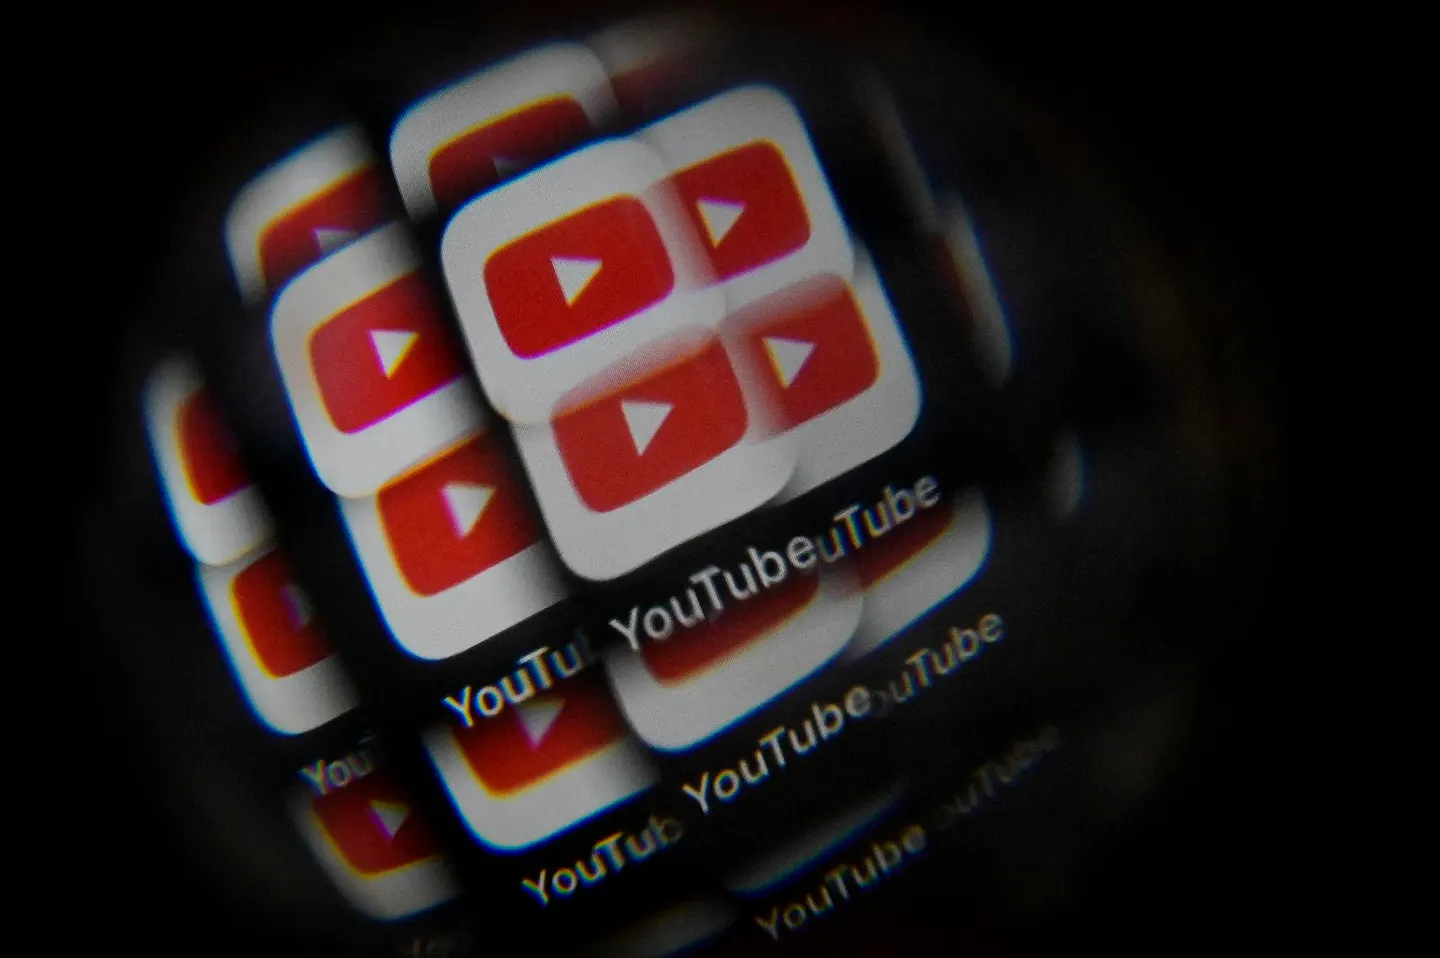 Google alojó más de 100 videos de YouTube que promocionan pornografía deepfake con IA